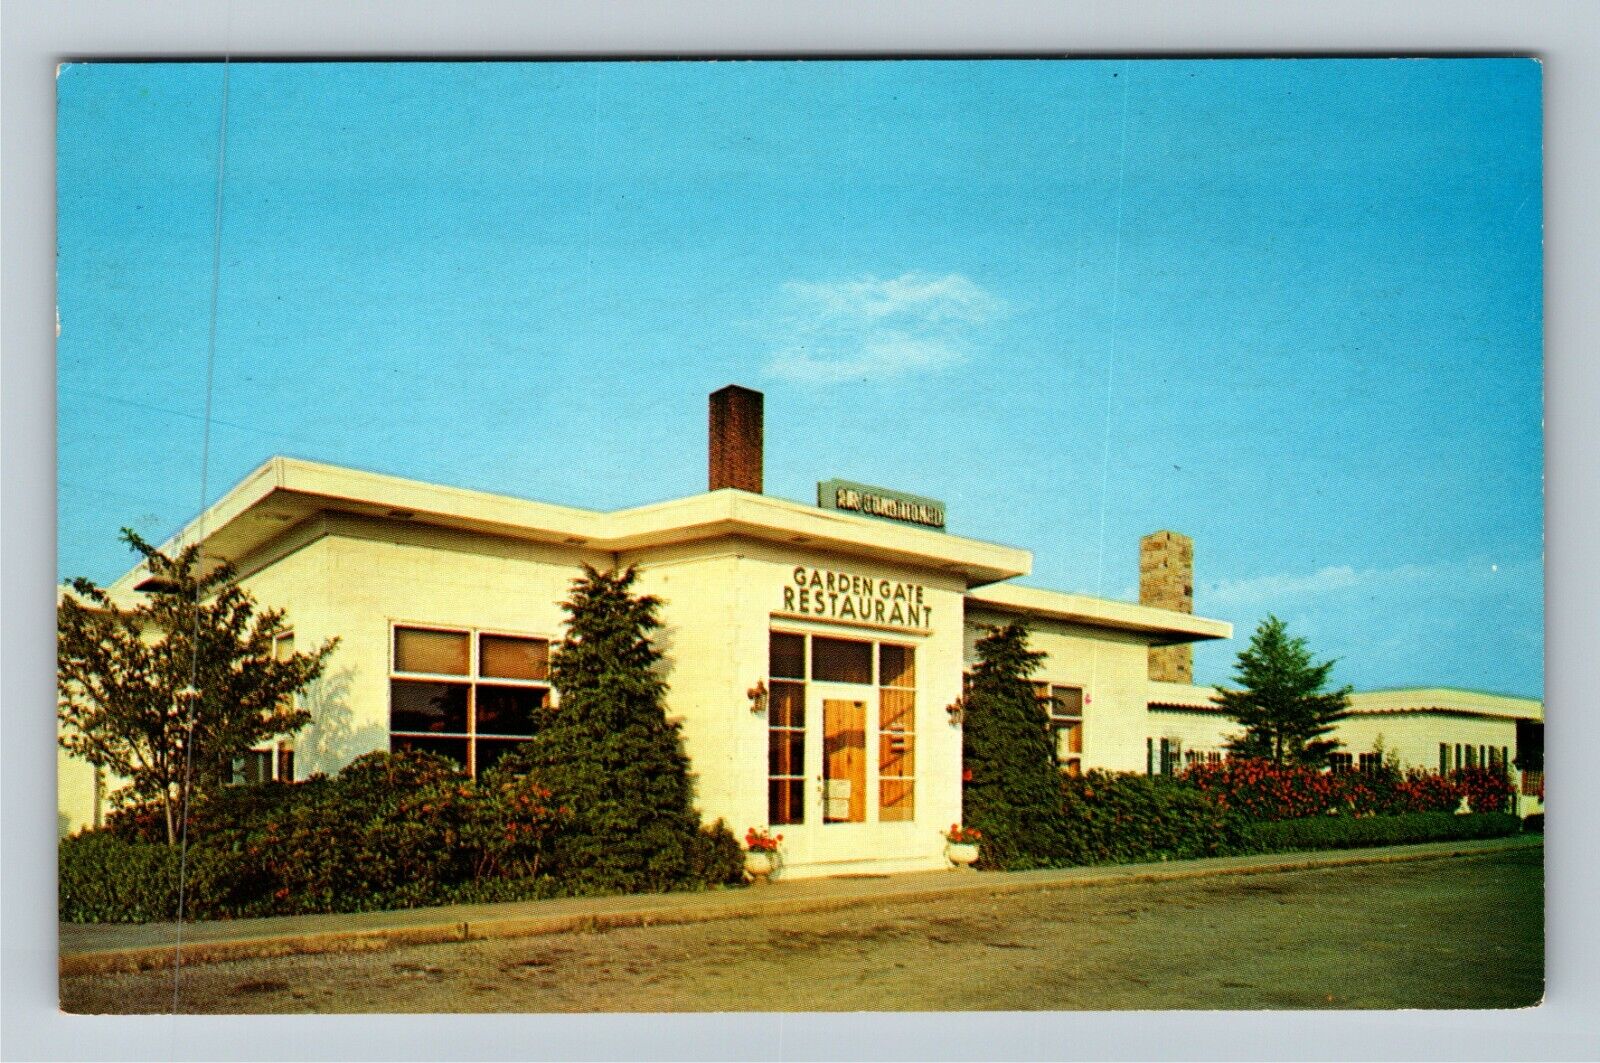 Butler PA-Pennsylvania, Garden Gate Restaurant, Antique Vintage Postcard